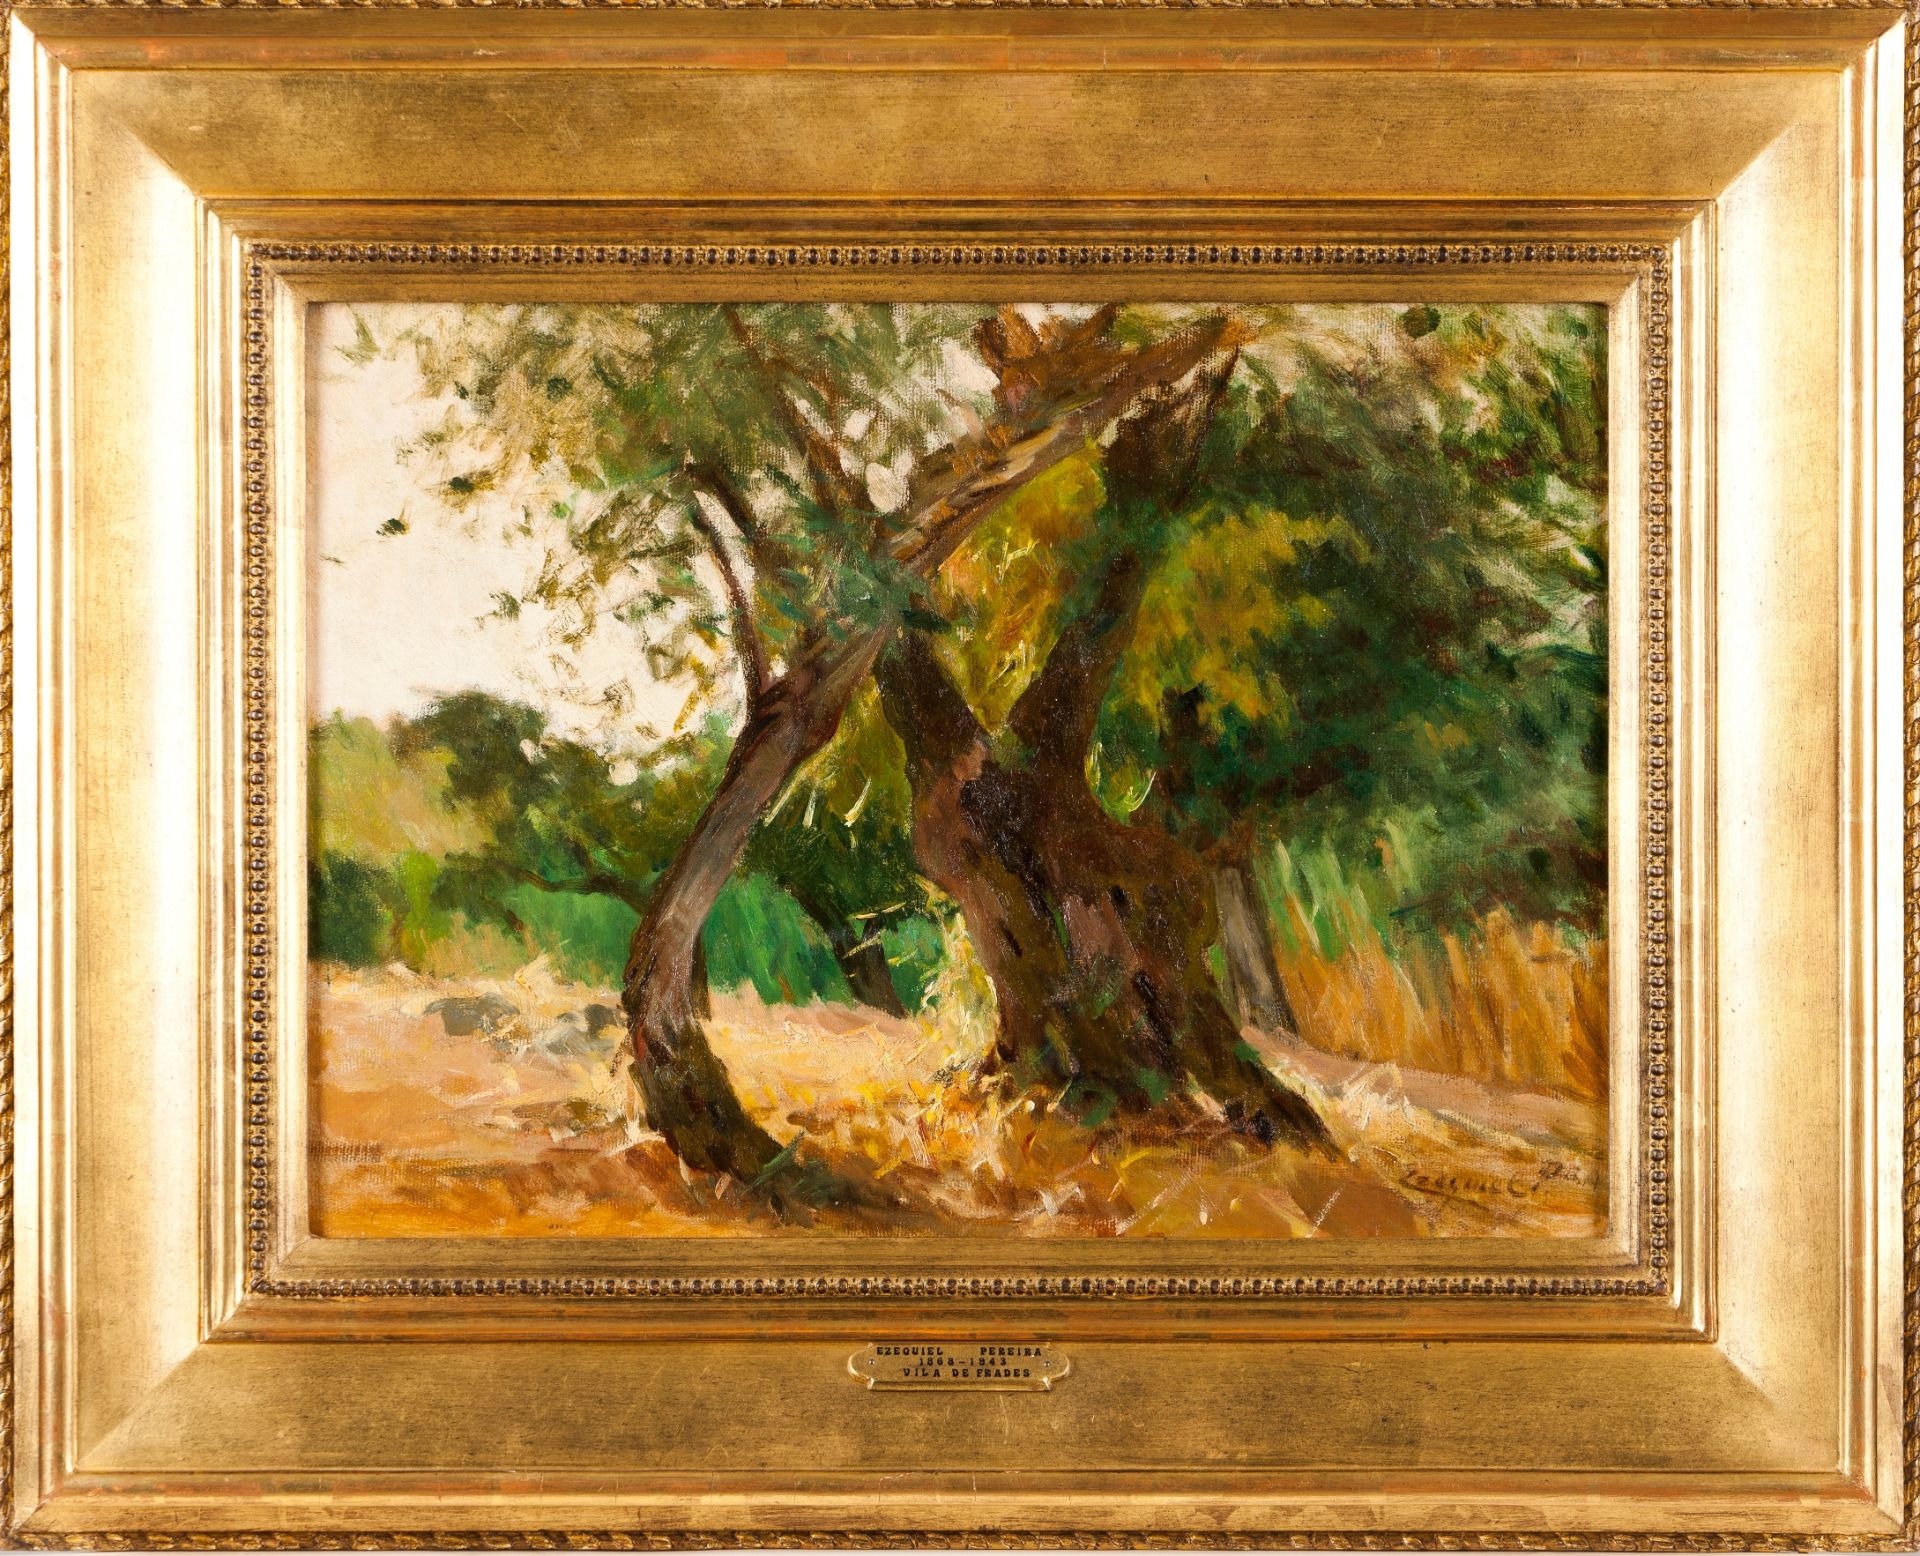 Ezequiel Pereira (1868-1943)"Vila de Frades- Alentejo"Oil on canvas Signed34x46 cm